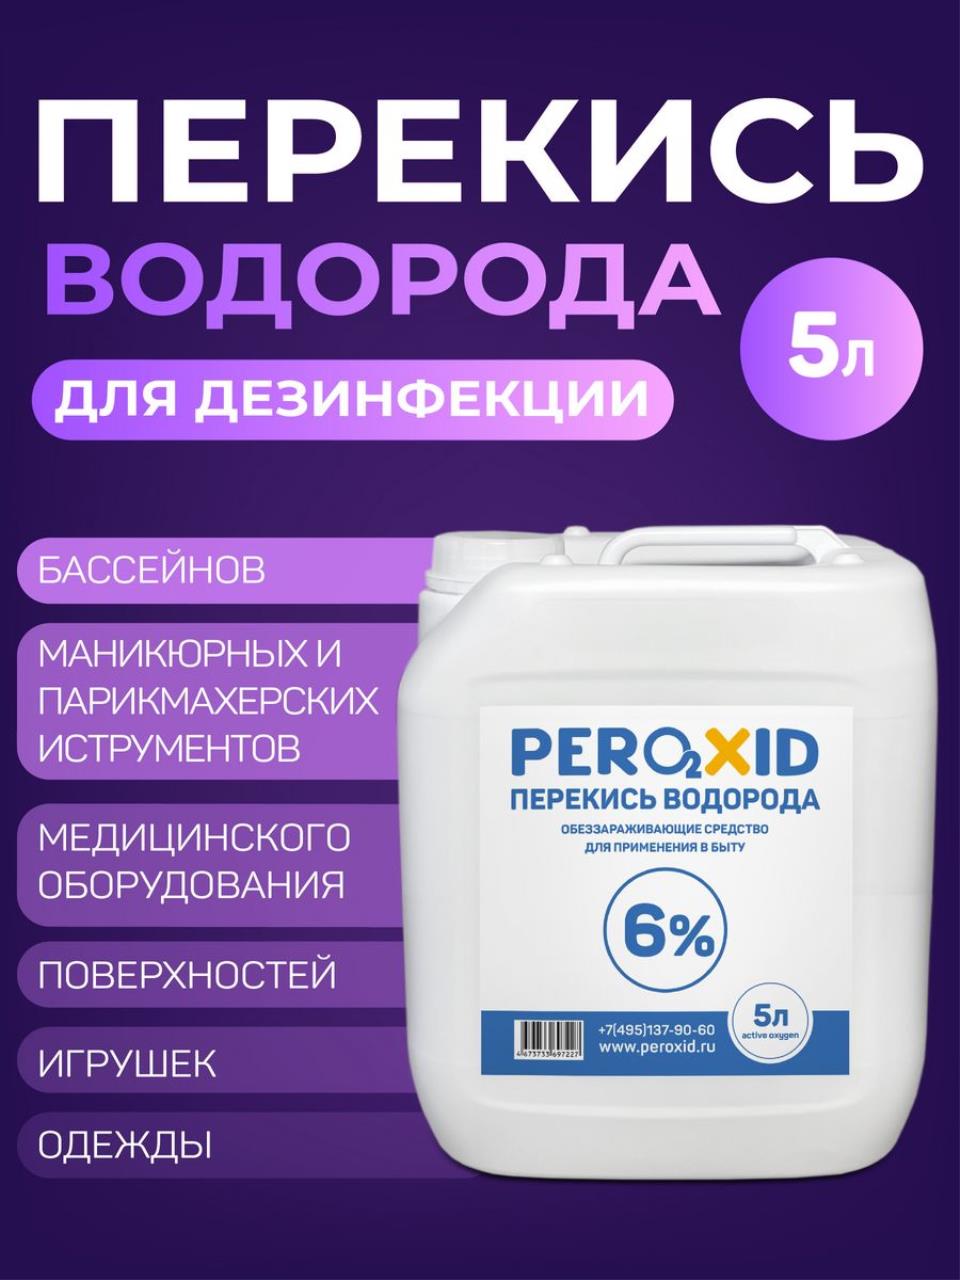 Перекись водорода PEROXID медицинская, для дезинфекции, 5 л